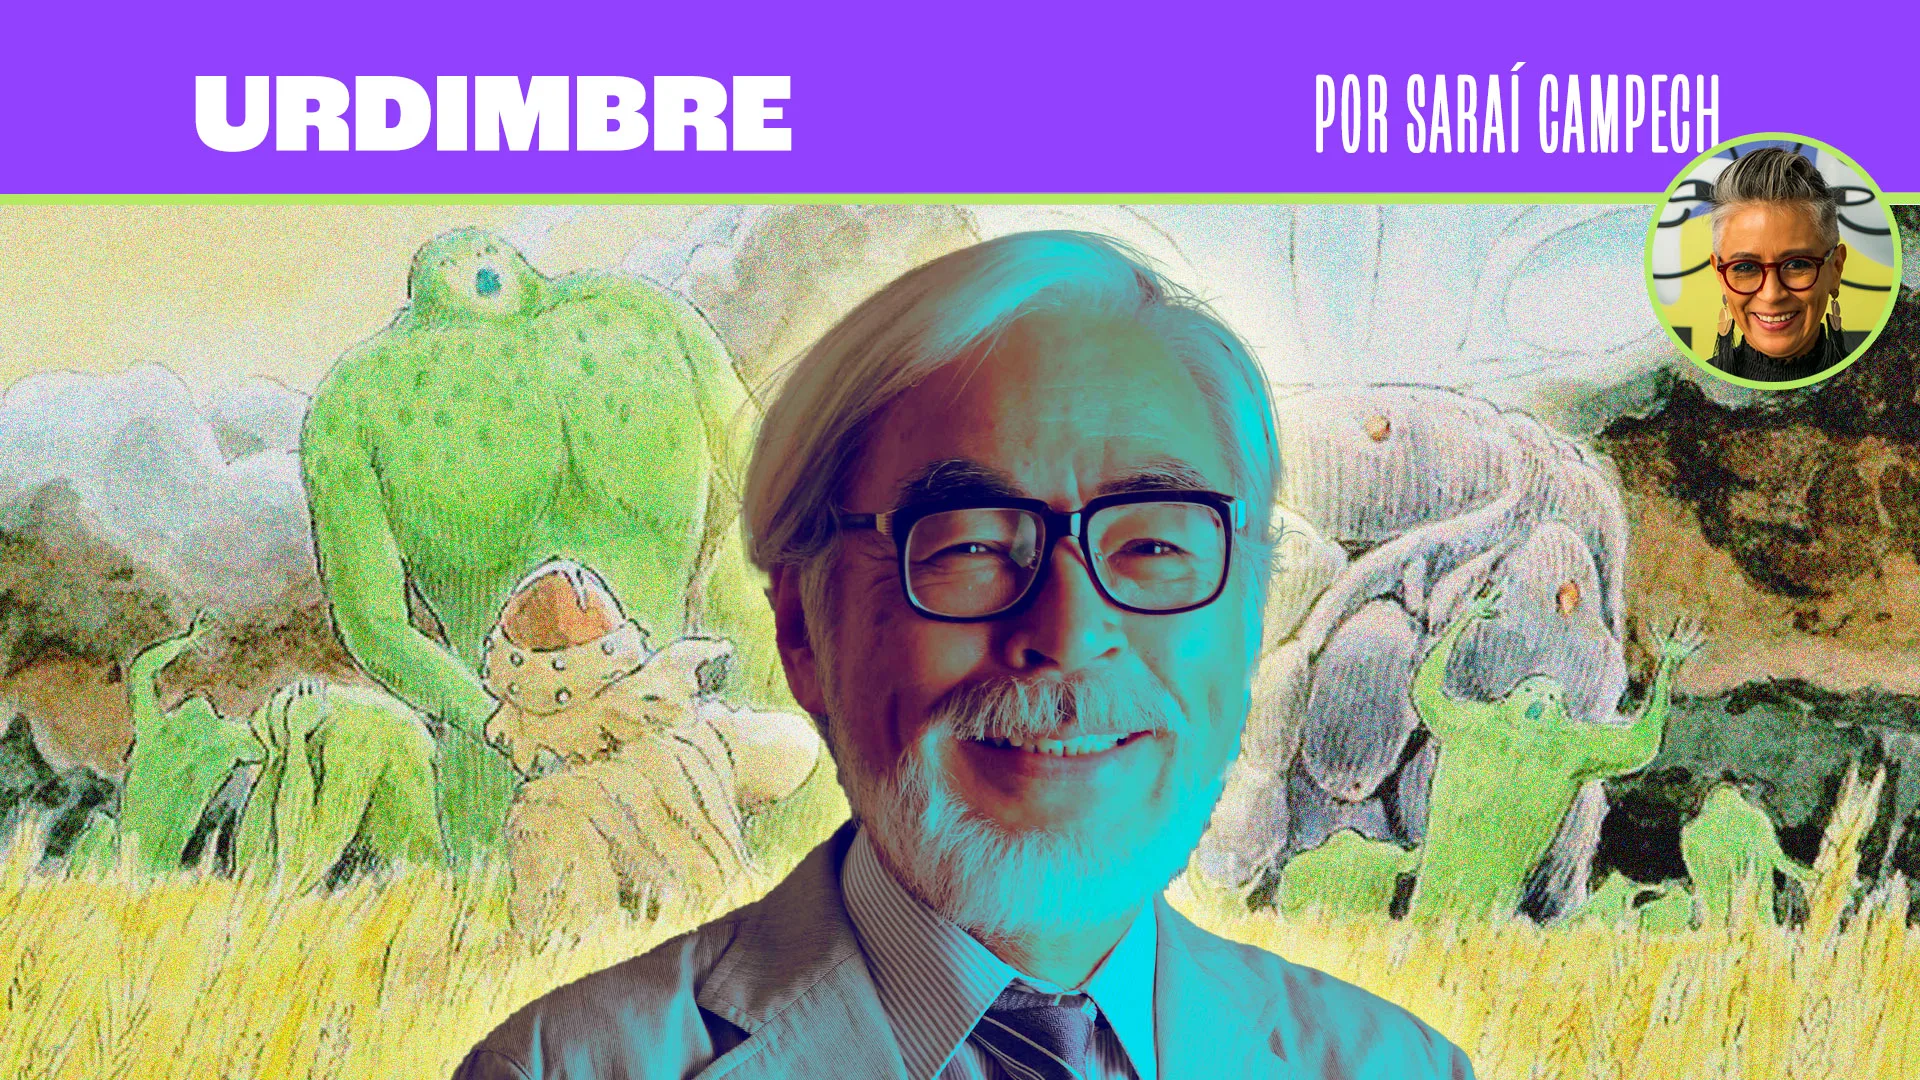 ¿Qué es lo que ha inspirado al icono de la animación, Hayao Miyazaki, a trazar mundos inolvidables? Saraí Campech nos cuenta sobre su historia en esta entrega de su columna "Urdimbre".